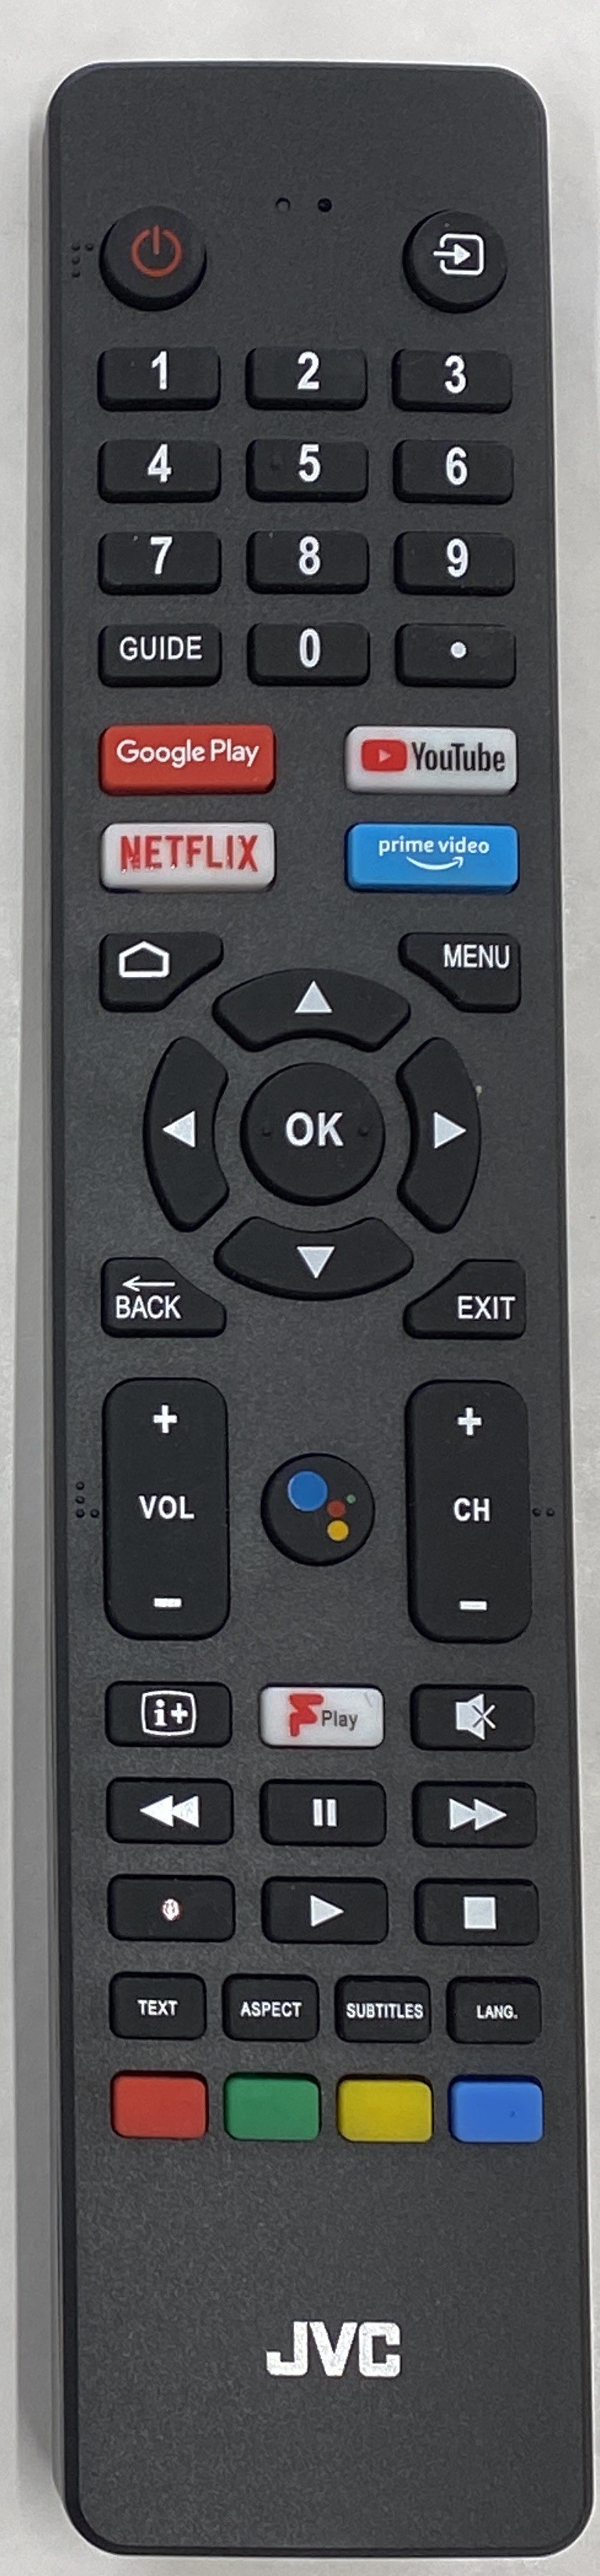 JVC RM-C3250_1 Remote Control Original 